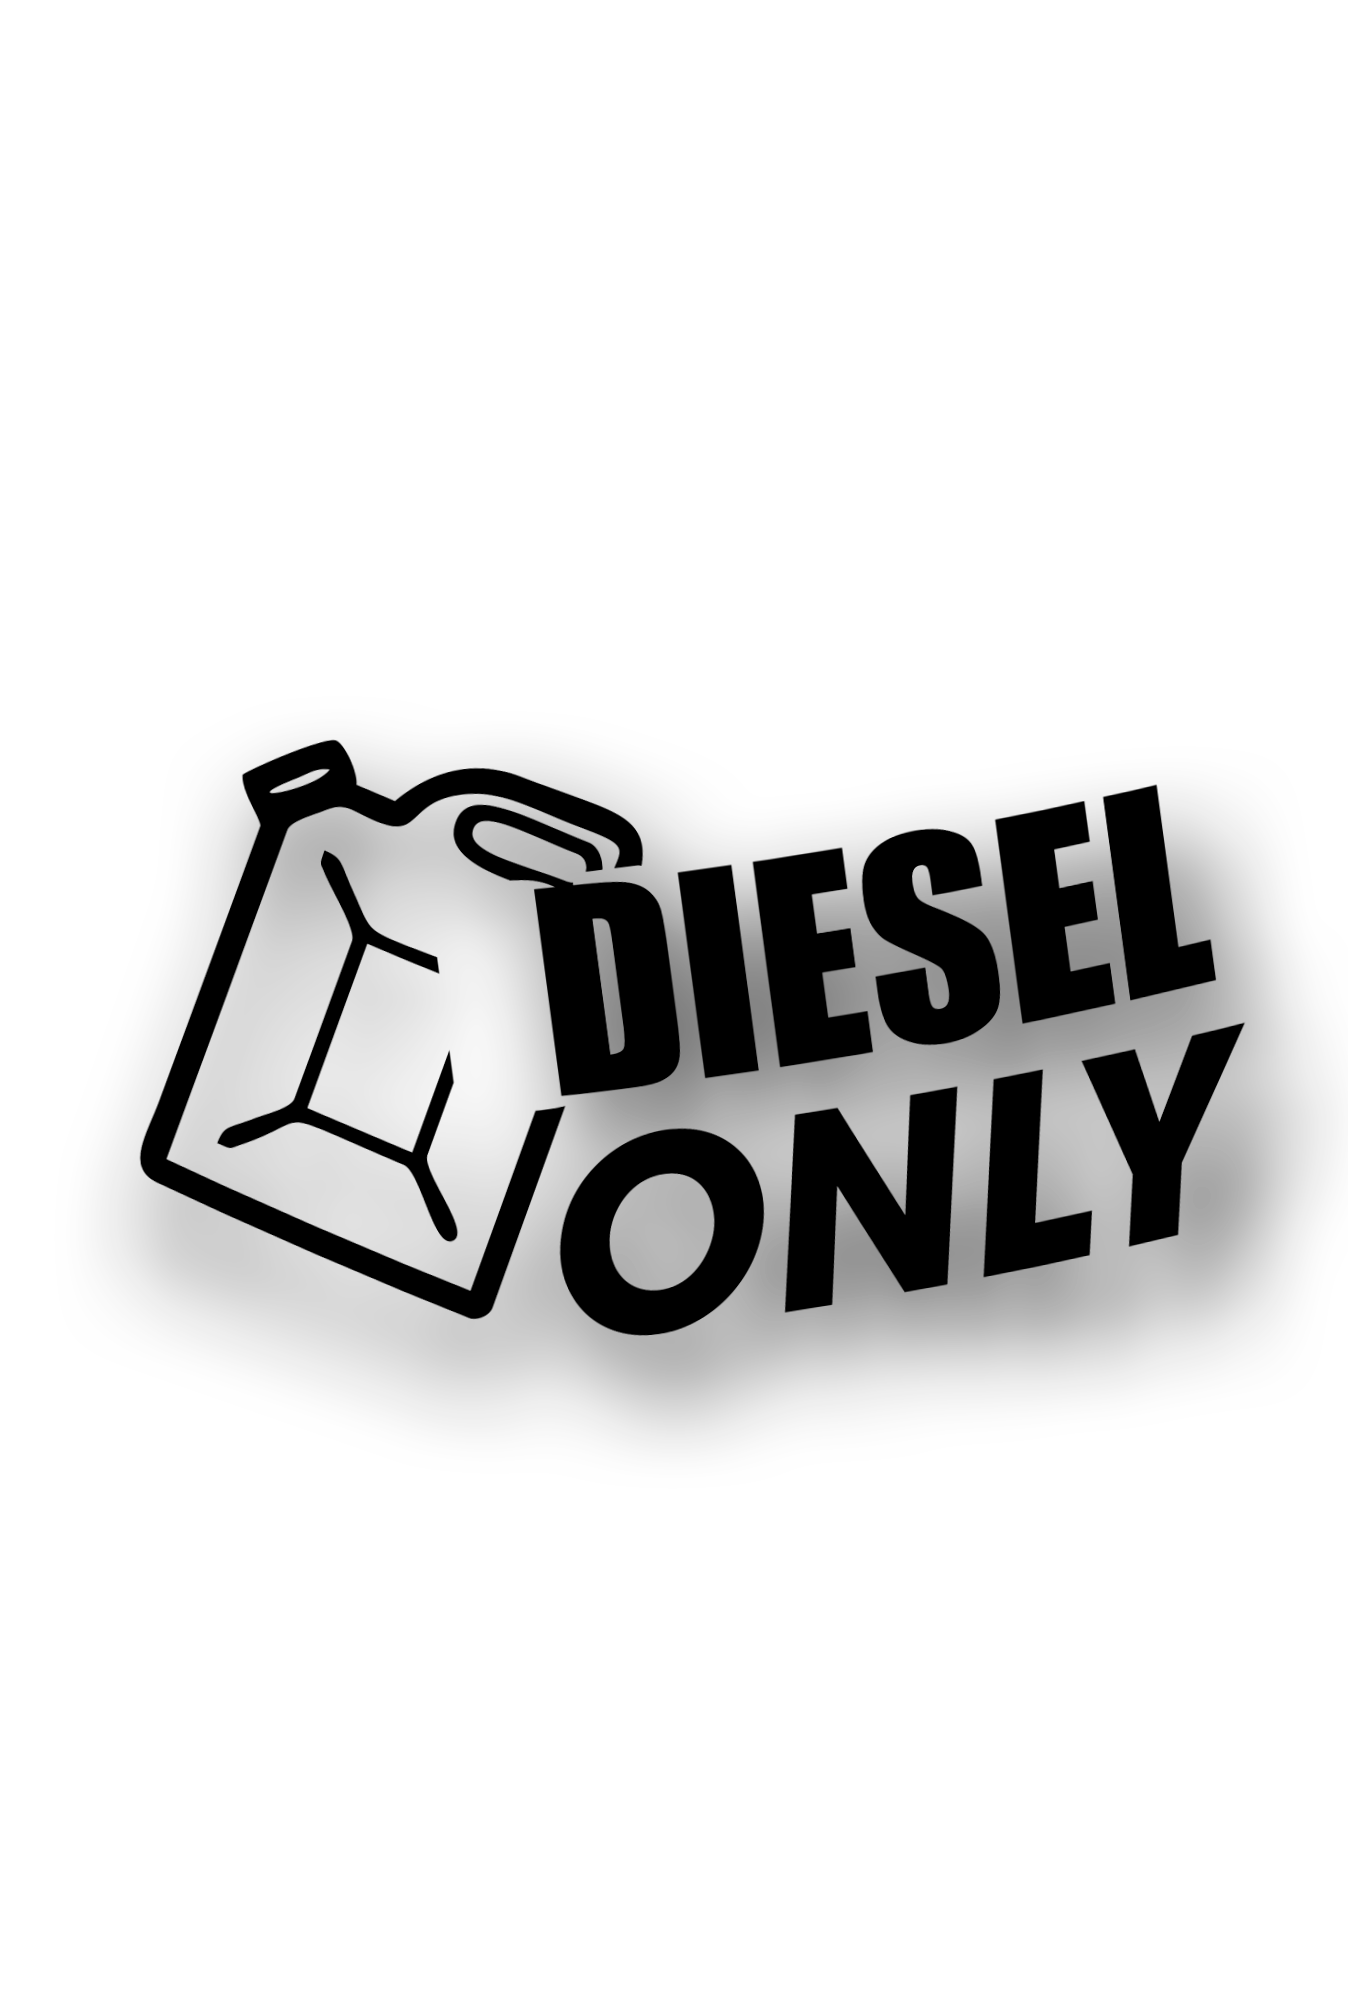 ''Diesel only'' - Plotted Vinyl Sticker